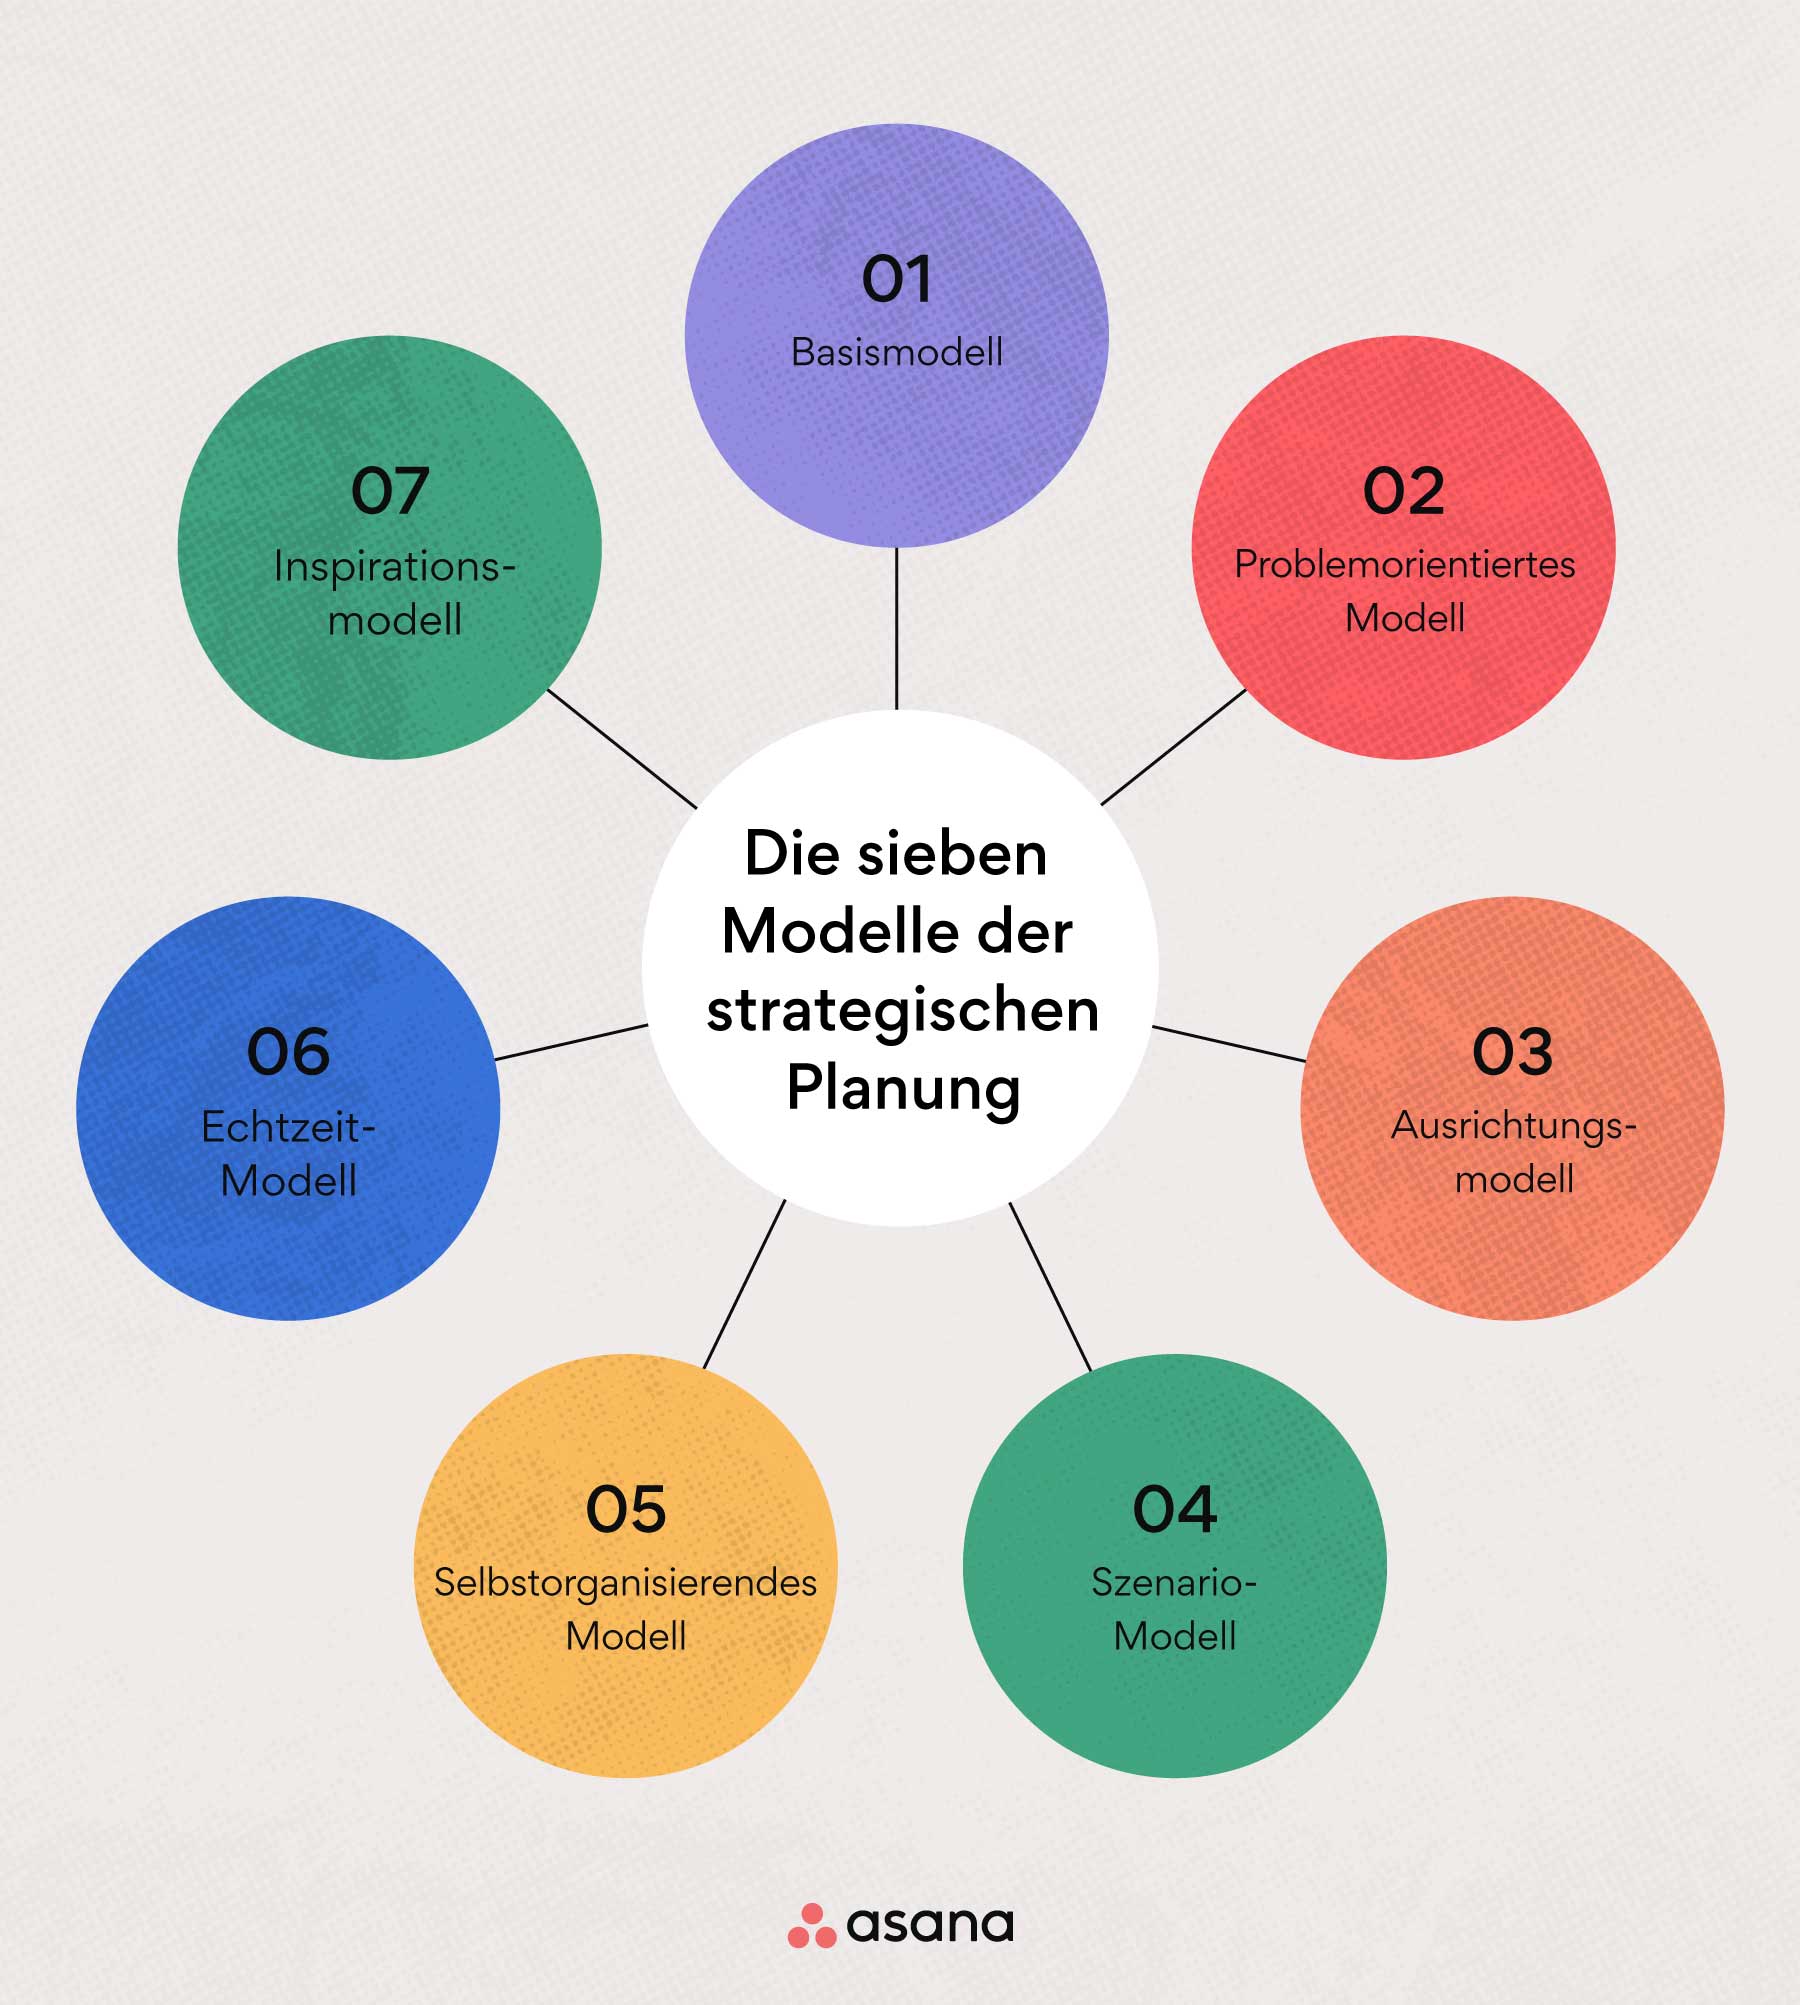 Die sieben Modelle der strategischen Planung